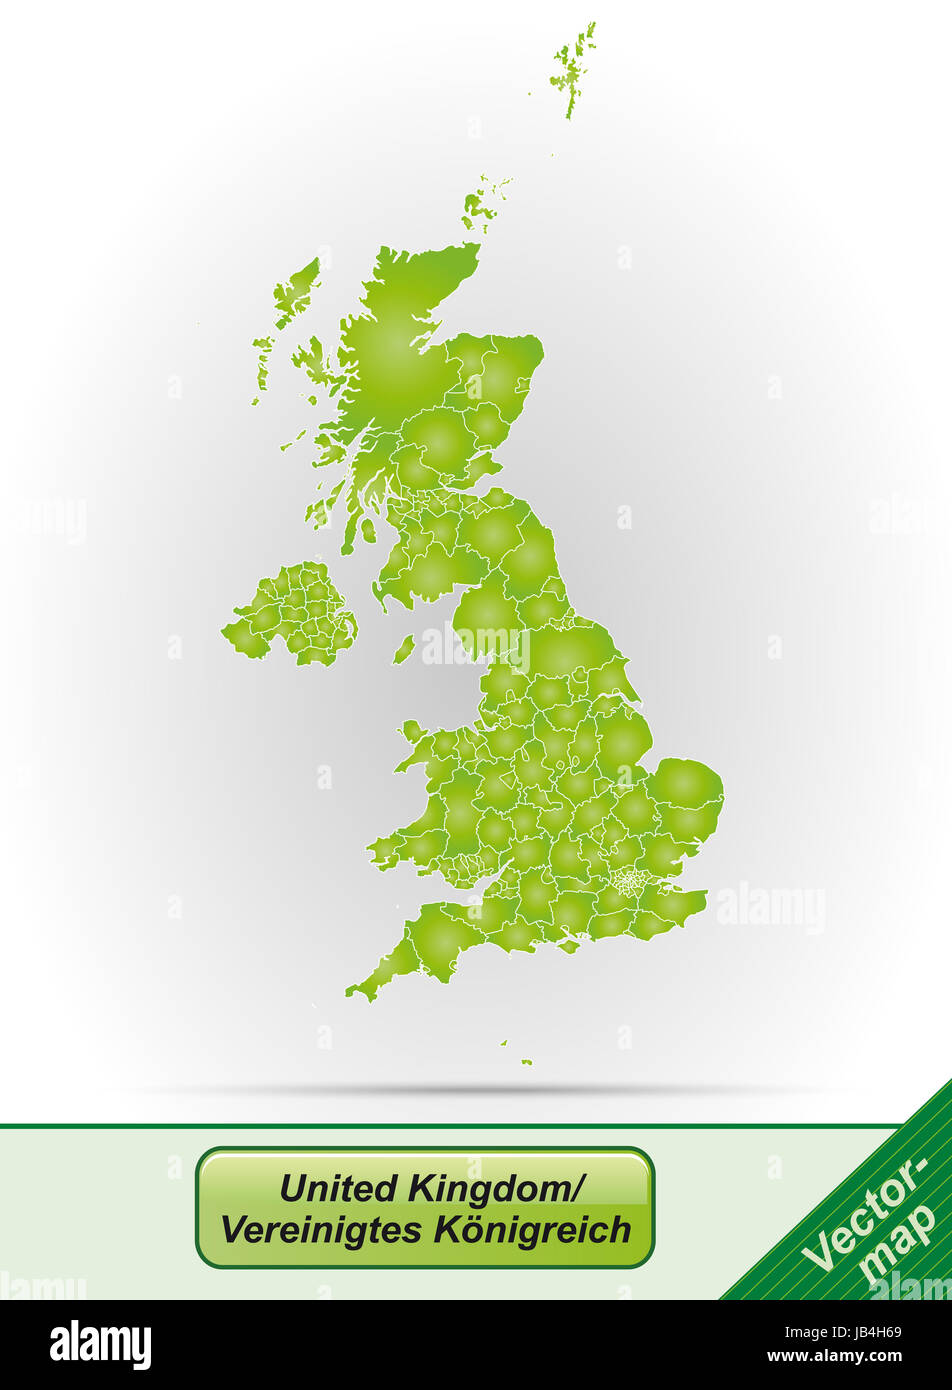 Vereinigtes Königreich in  Europa als Grenzkarte mit Grenzen in Grün. Durch die ansprechende Gestaltung fügt sich die Karte perfekt in Ihr Vorhaben ein. Stock Photo